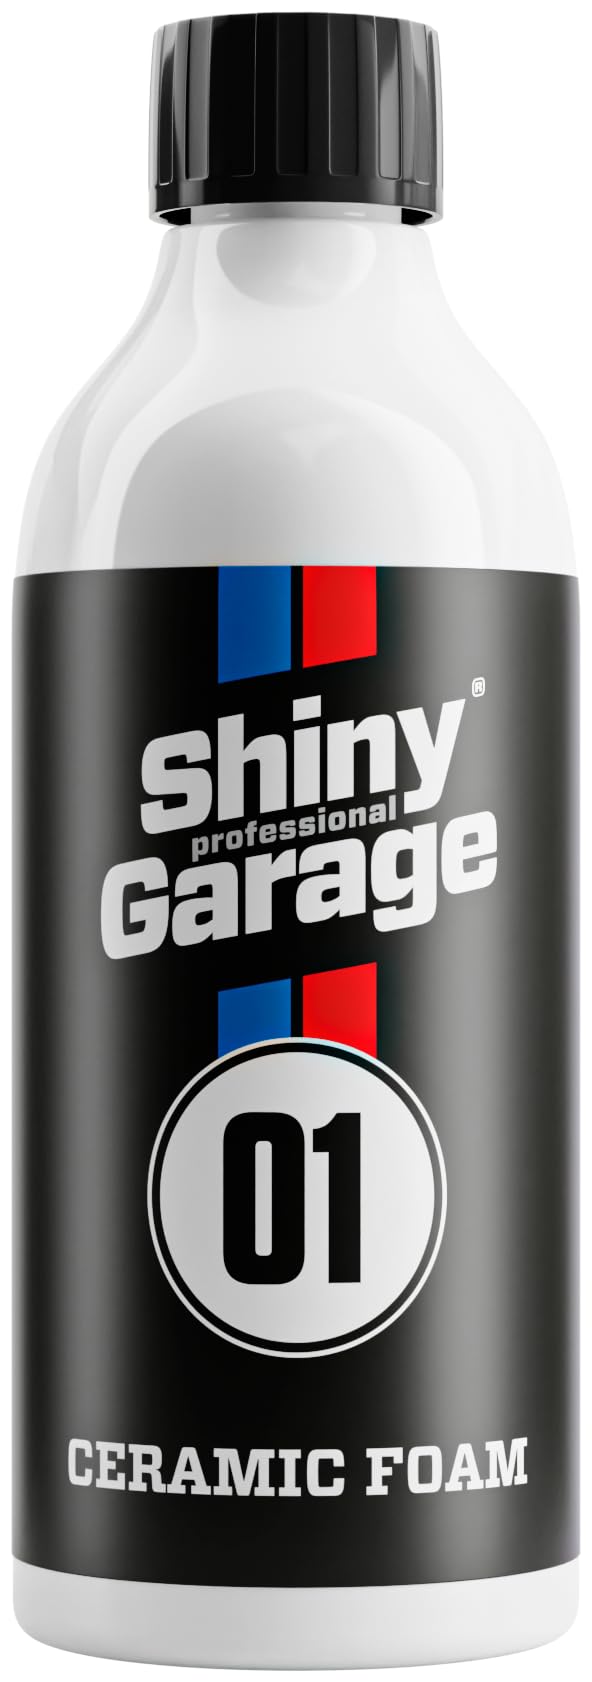 Shiny Garage Ceramic Autoshampoo mit Versiegelung 'Ceramic Foam' 500 ml - Keramik Auto Shampoo mit Stark Hydrophober Wirkung - Schützt Lack-, Glas- und Kunststoffoberflächen - Effektive Autopflege